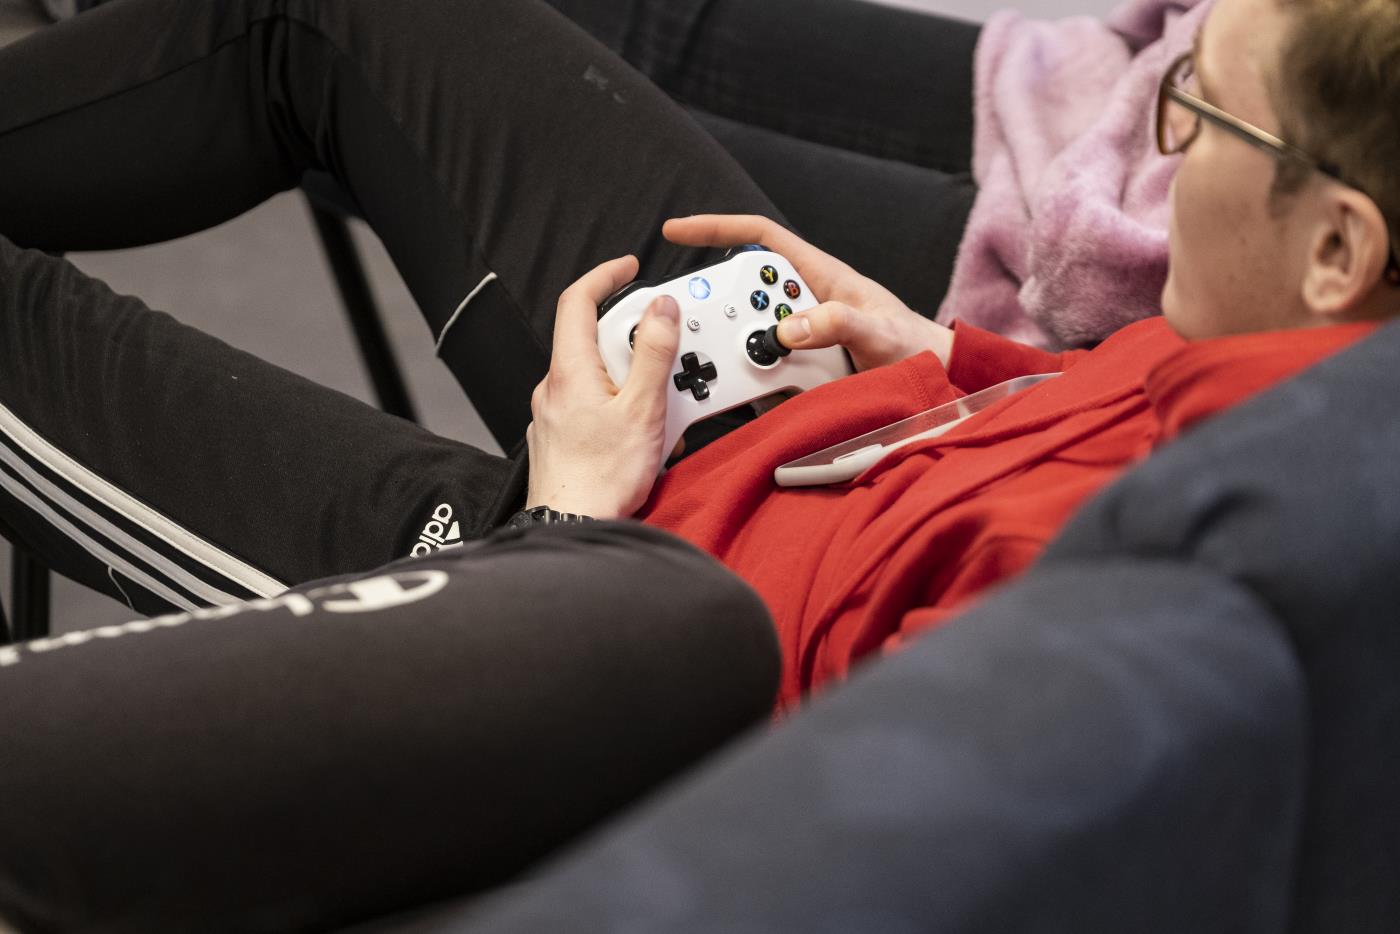 En ung kille sitter i en soffa och spelar tv-spel.